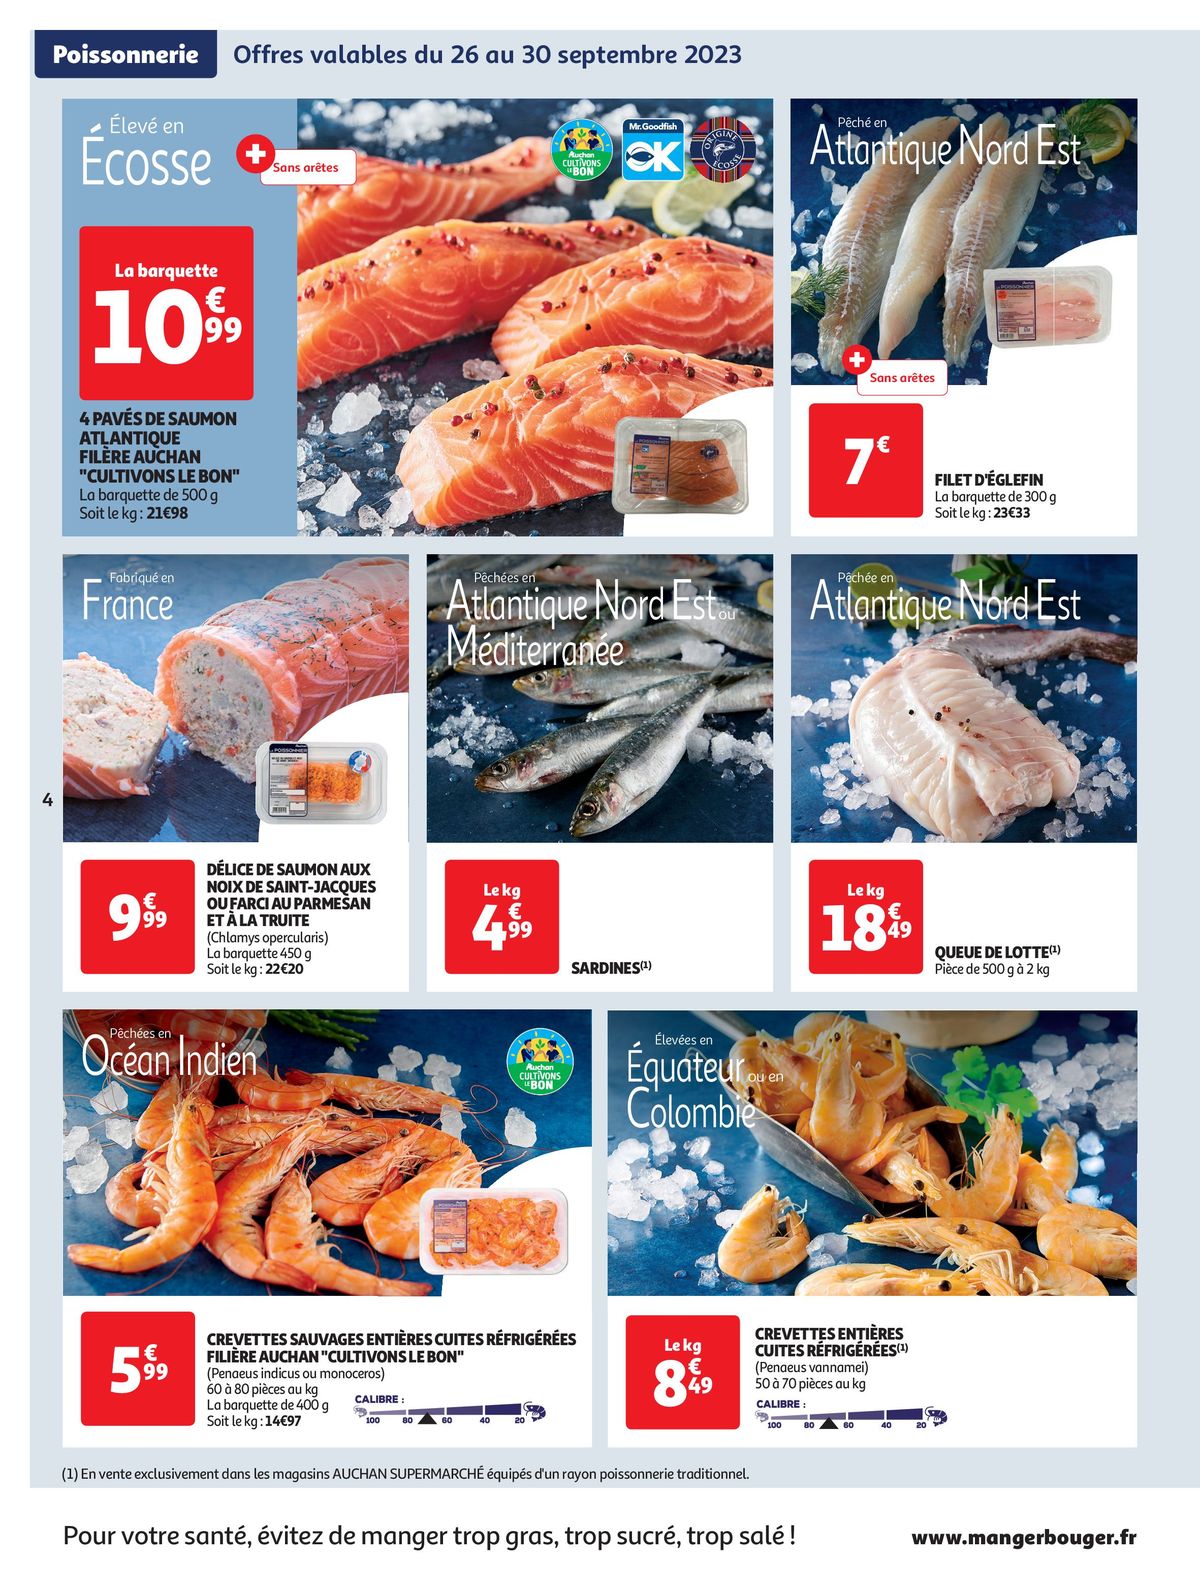 Catalogue Spécial Cuisine Gourmane dans votre supermarché, page 00004